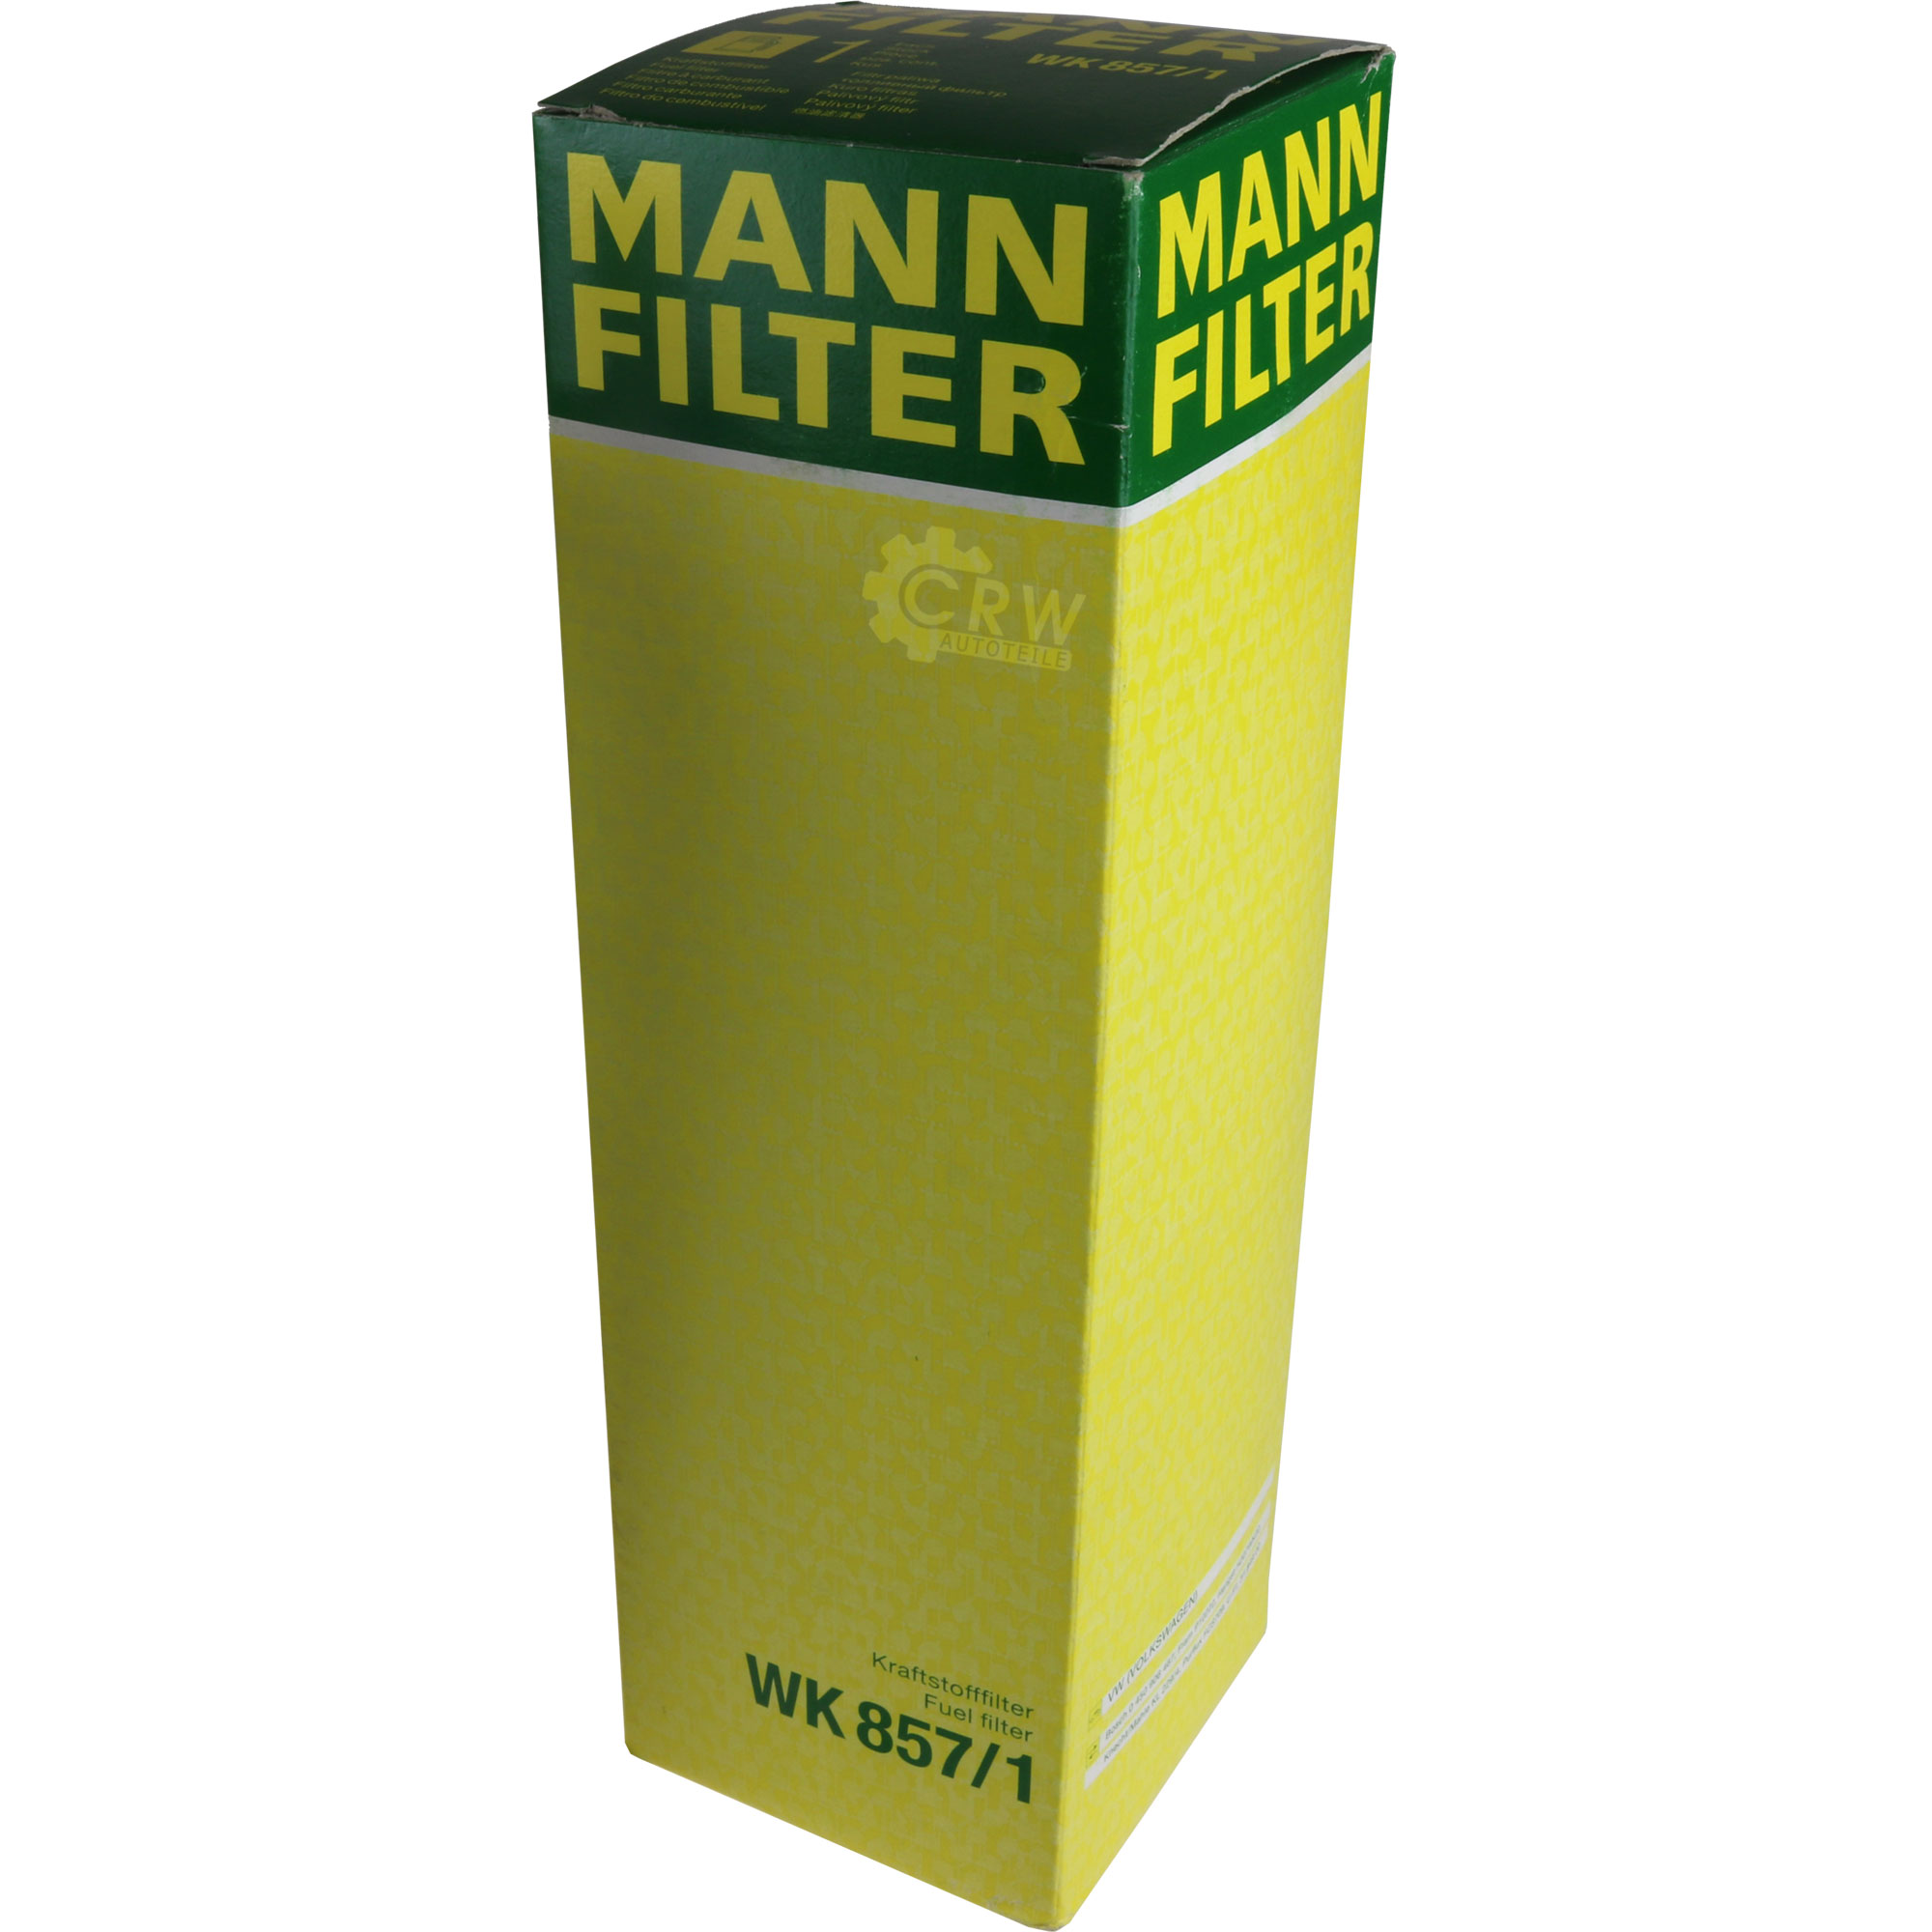 MANN-FILTER Kraftstofffilter WK 857/1 Fuel Filter